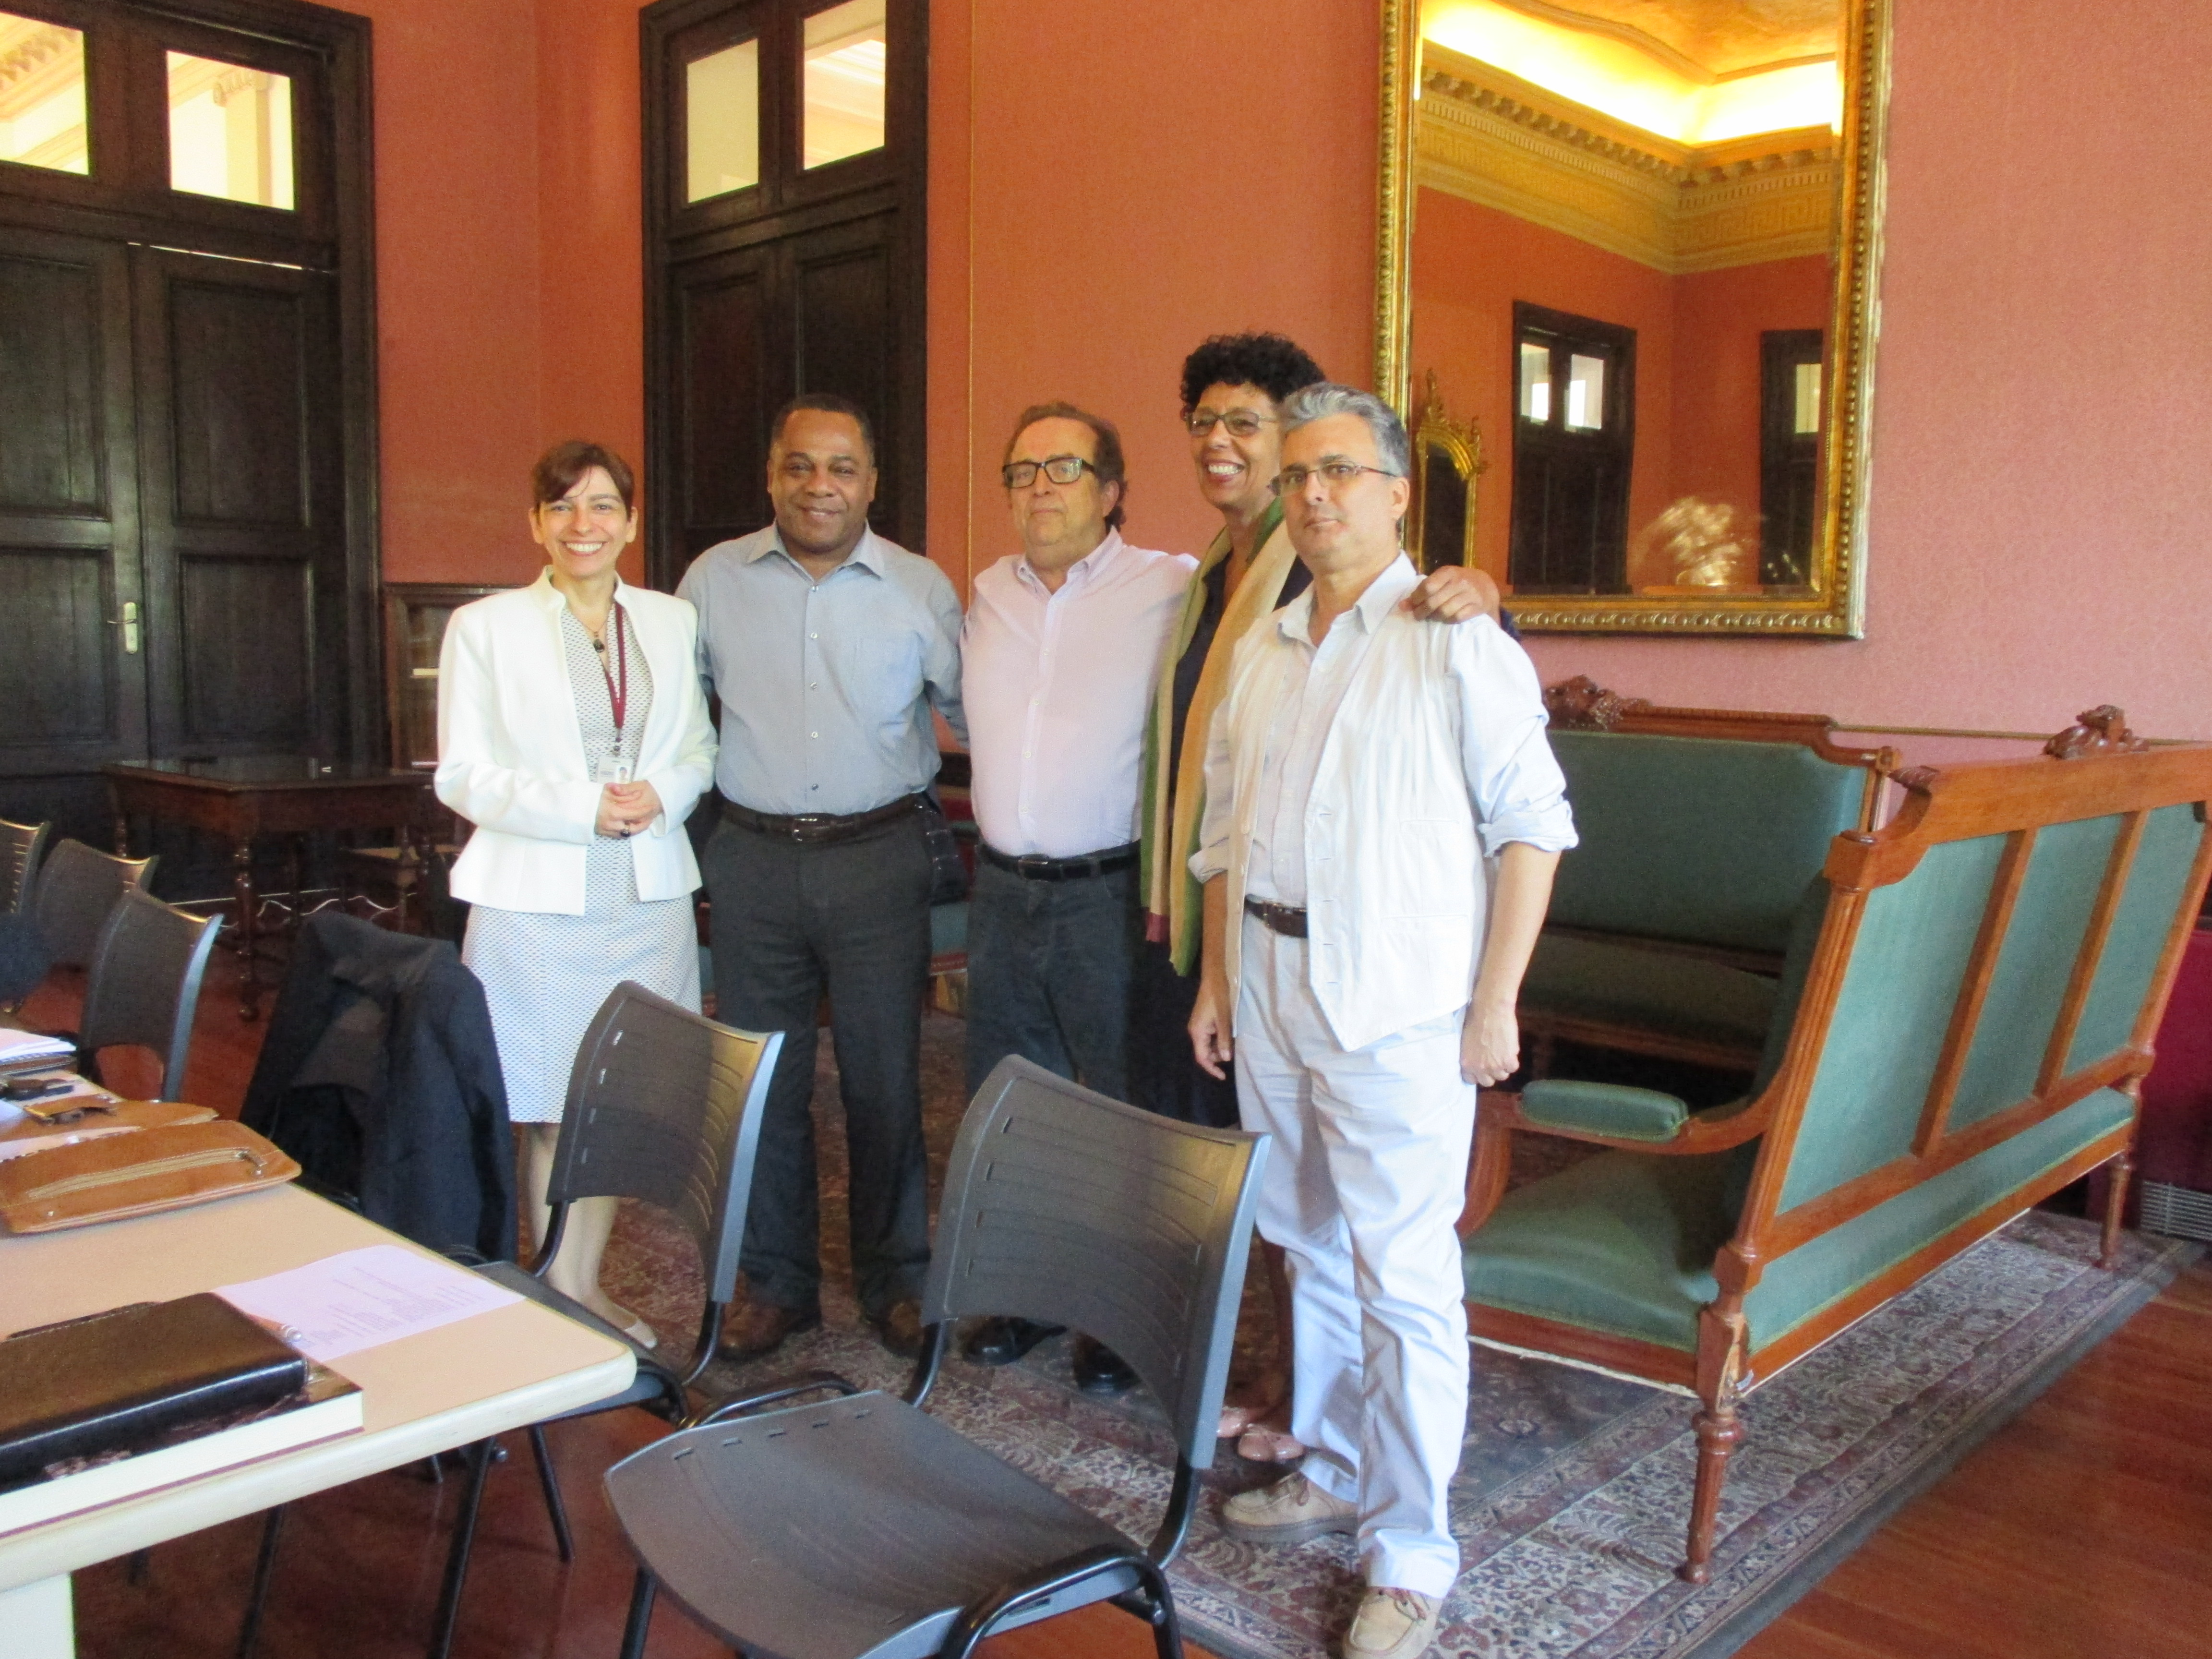 Membros da nova Mesa diretora do Comitê MoWBrasil posam no Salão Nobre do Arquivo Nacional - Rio de Janeiro - 23 de setembro de 2015